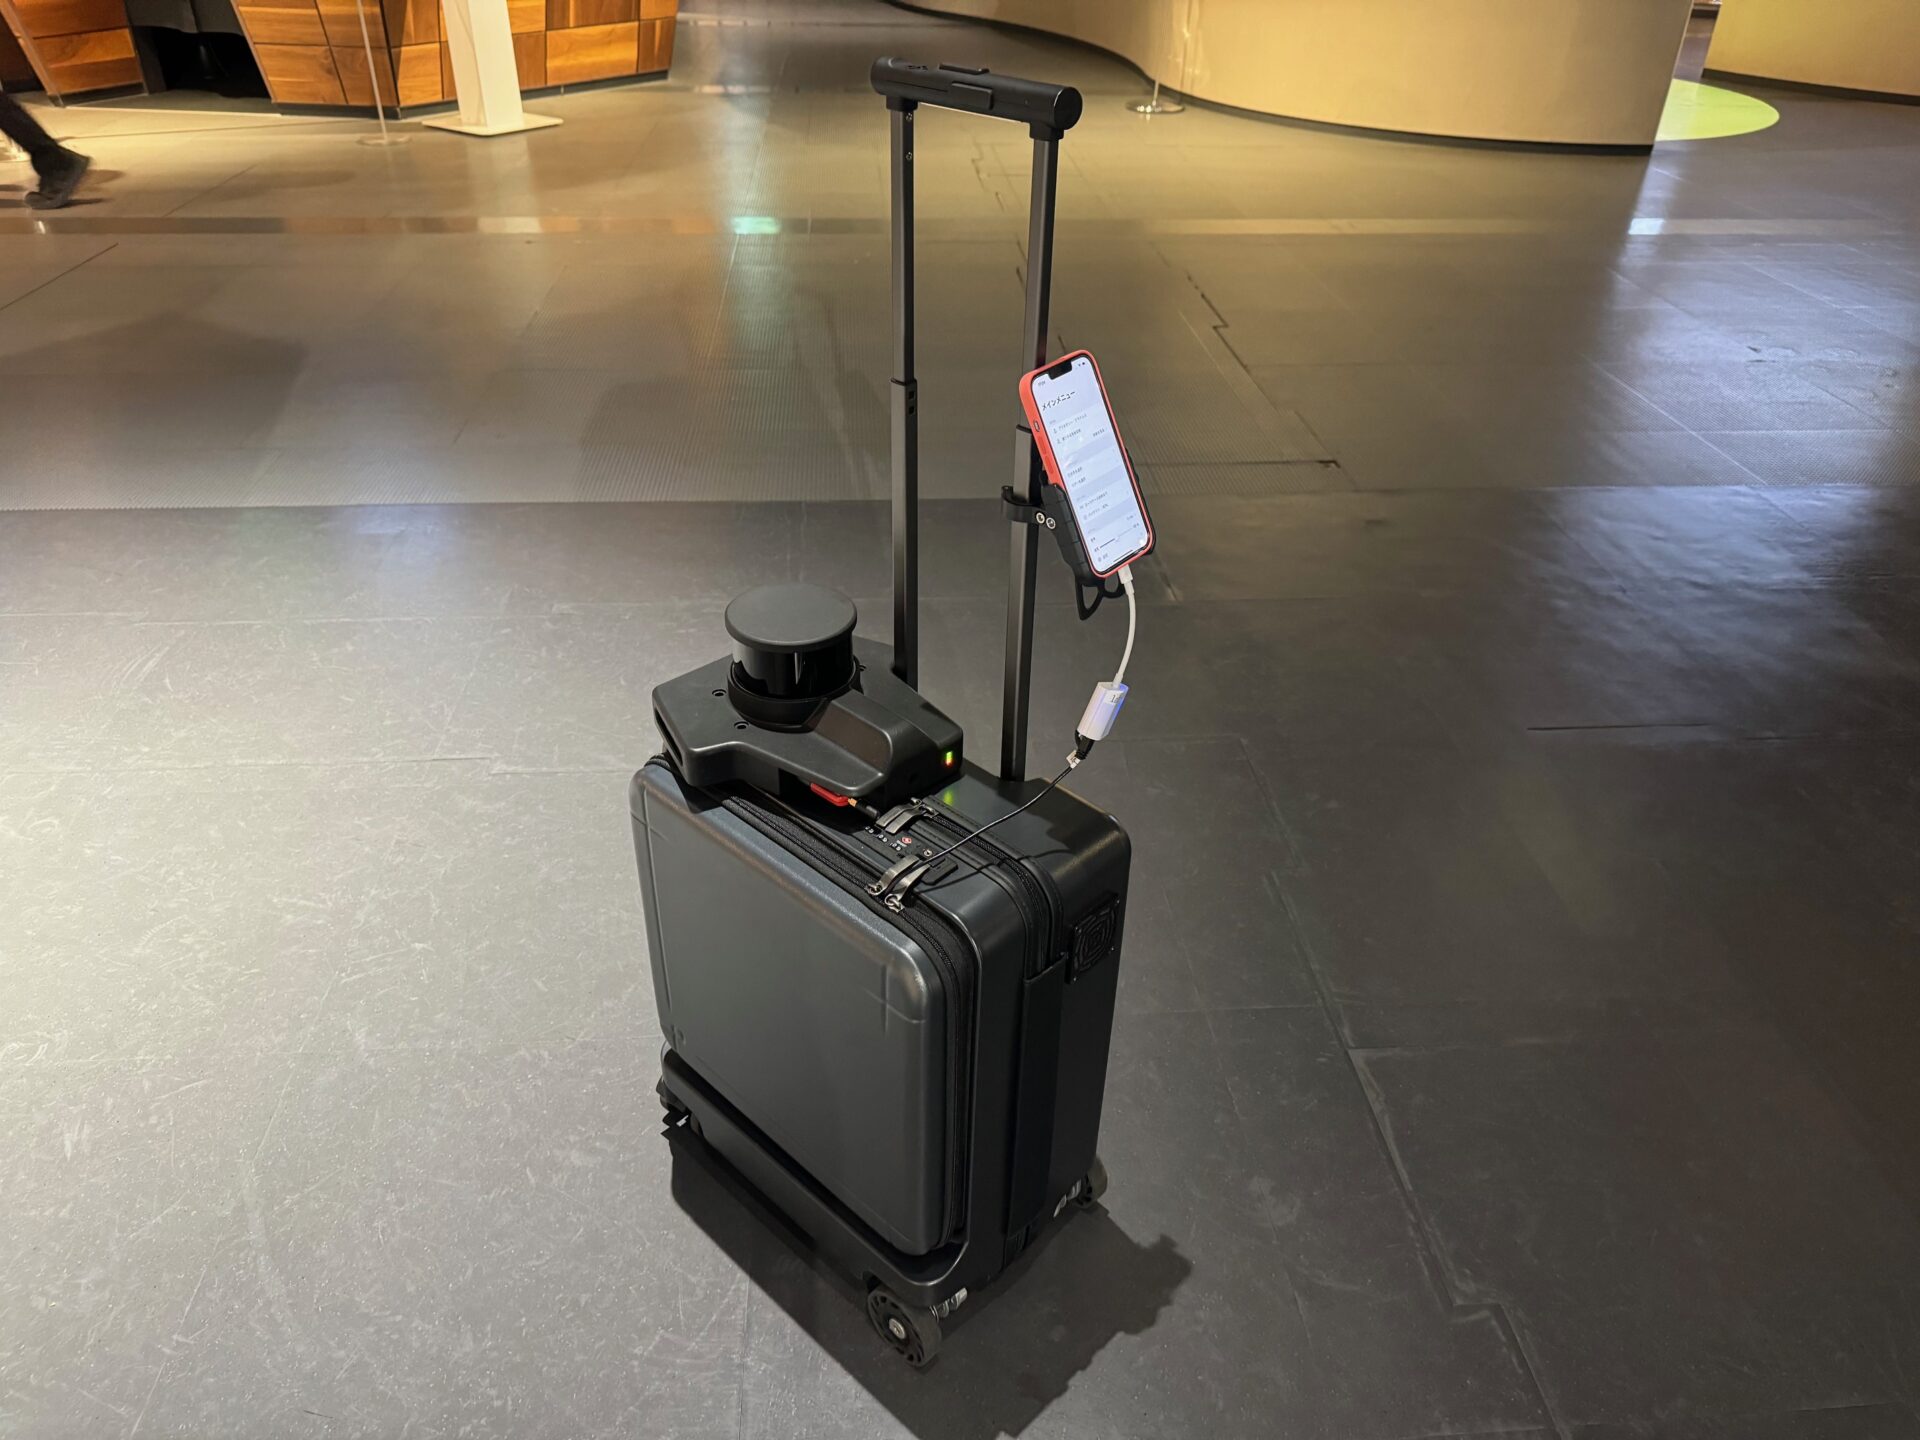 エーアイスーツケースの写真。伸縮ハンドルの部分に専用アプリを搭載したスマホがとりつけられています